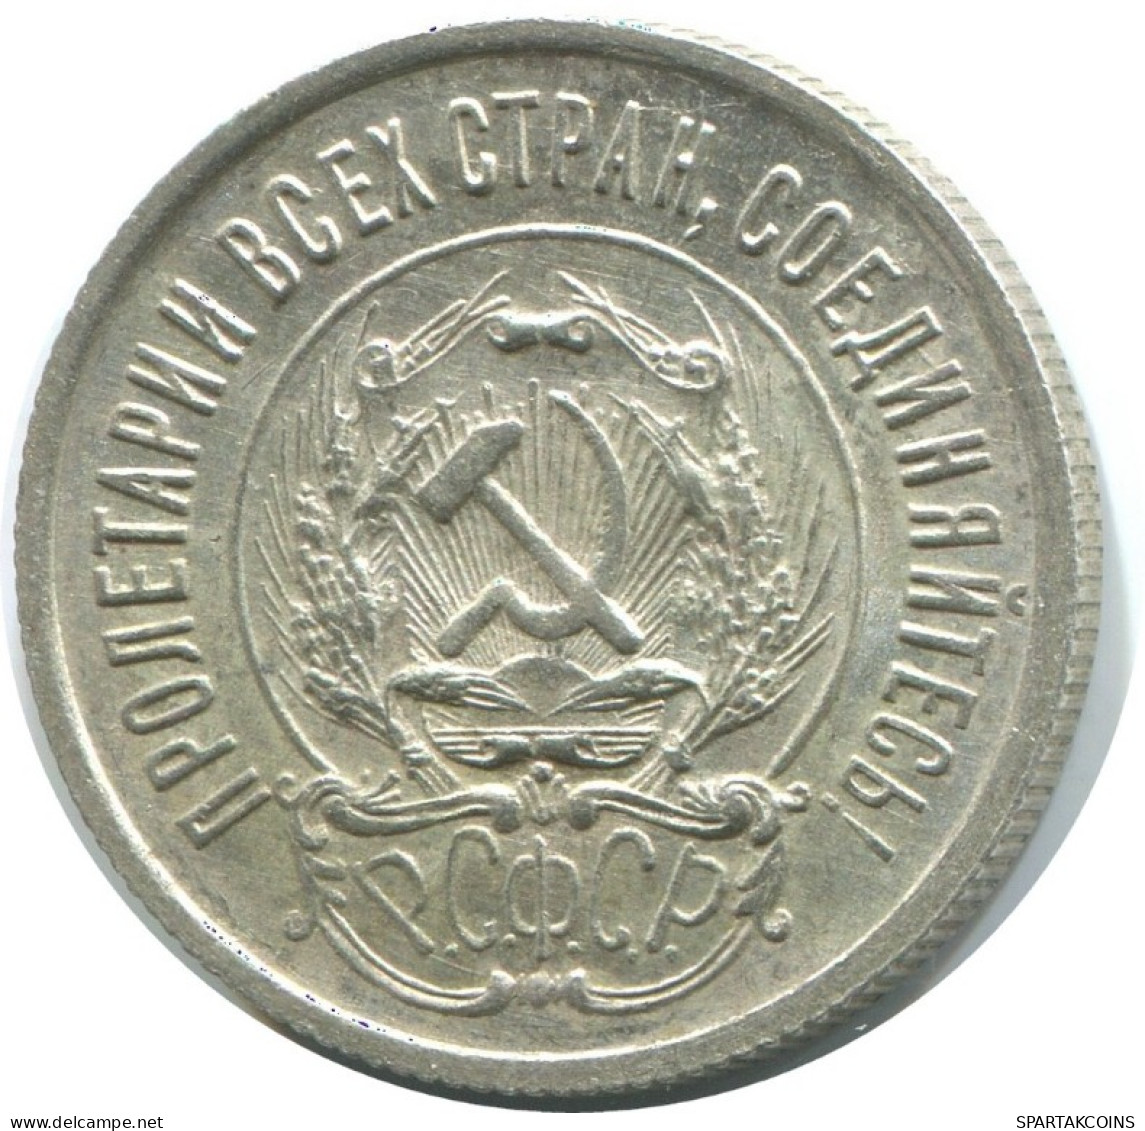 20 KOPEKS 1923 RUSSLAND RUSSIA RSFSR SILBER Münze HIGH GRADE #AF597.D.A - Rusia